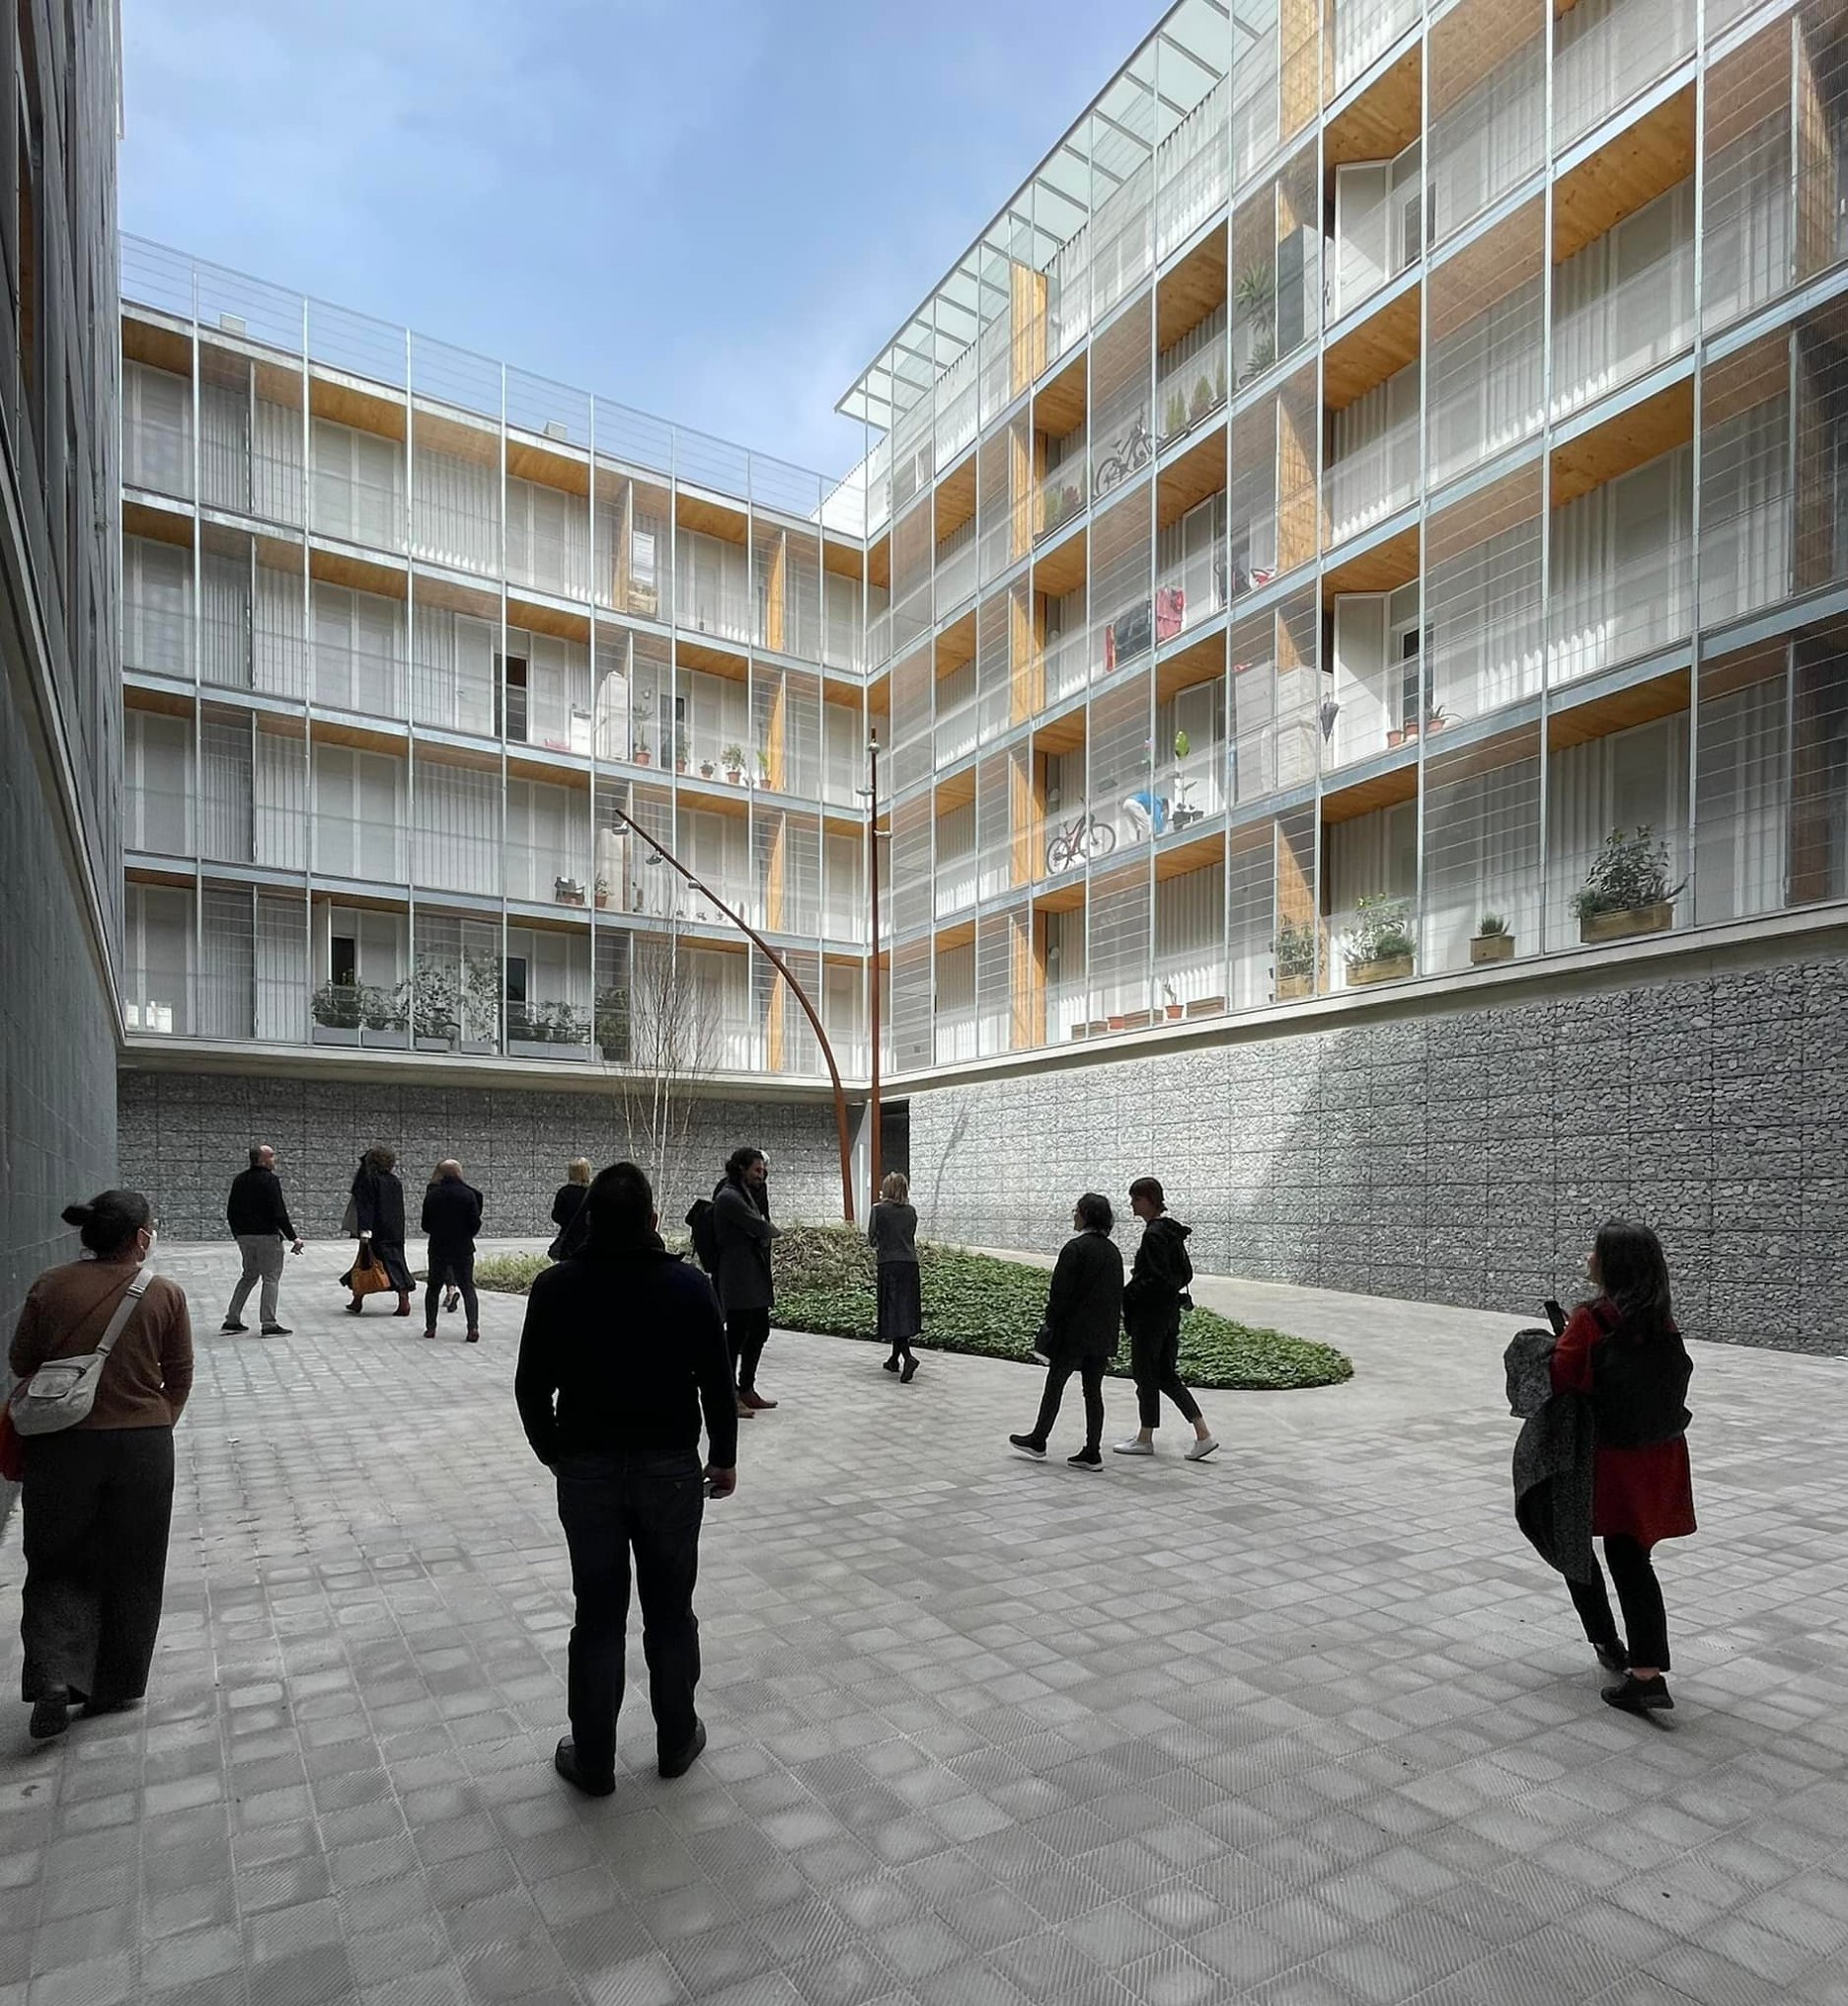 E.U. Prize - Mies van der Rohe Award 2022 - obhliadka 85 jednotiek sociálneho bývania v katalánskom meste Cornellà de Llobregat